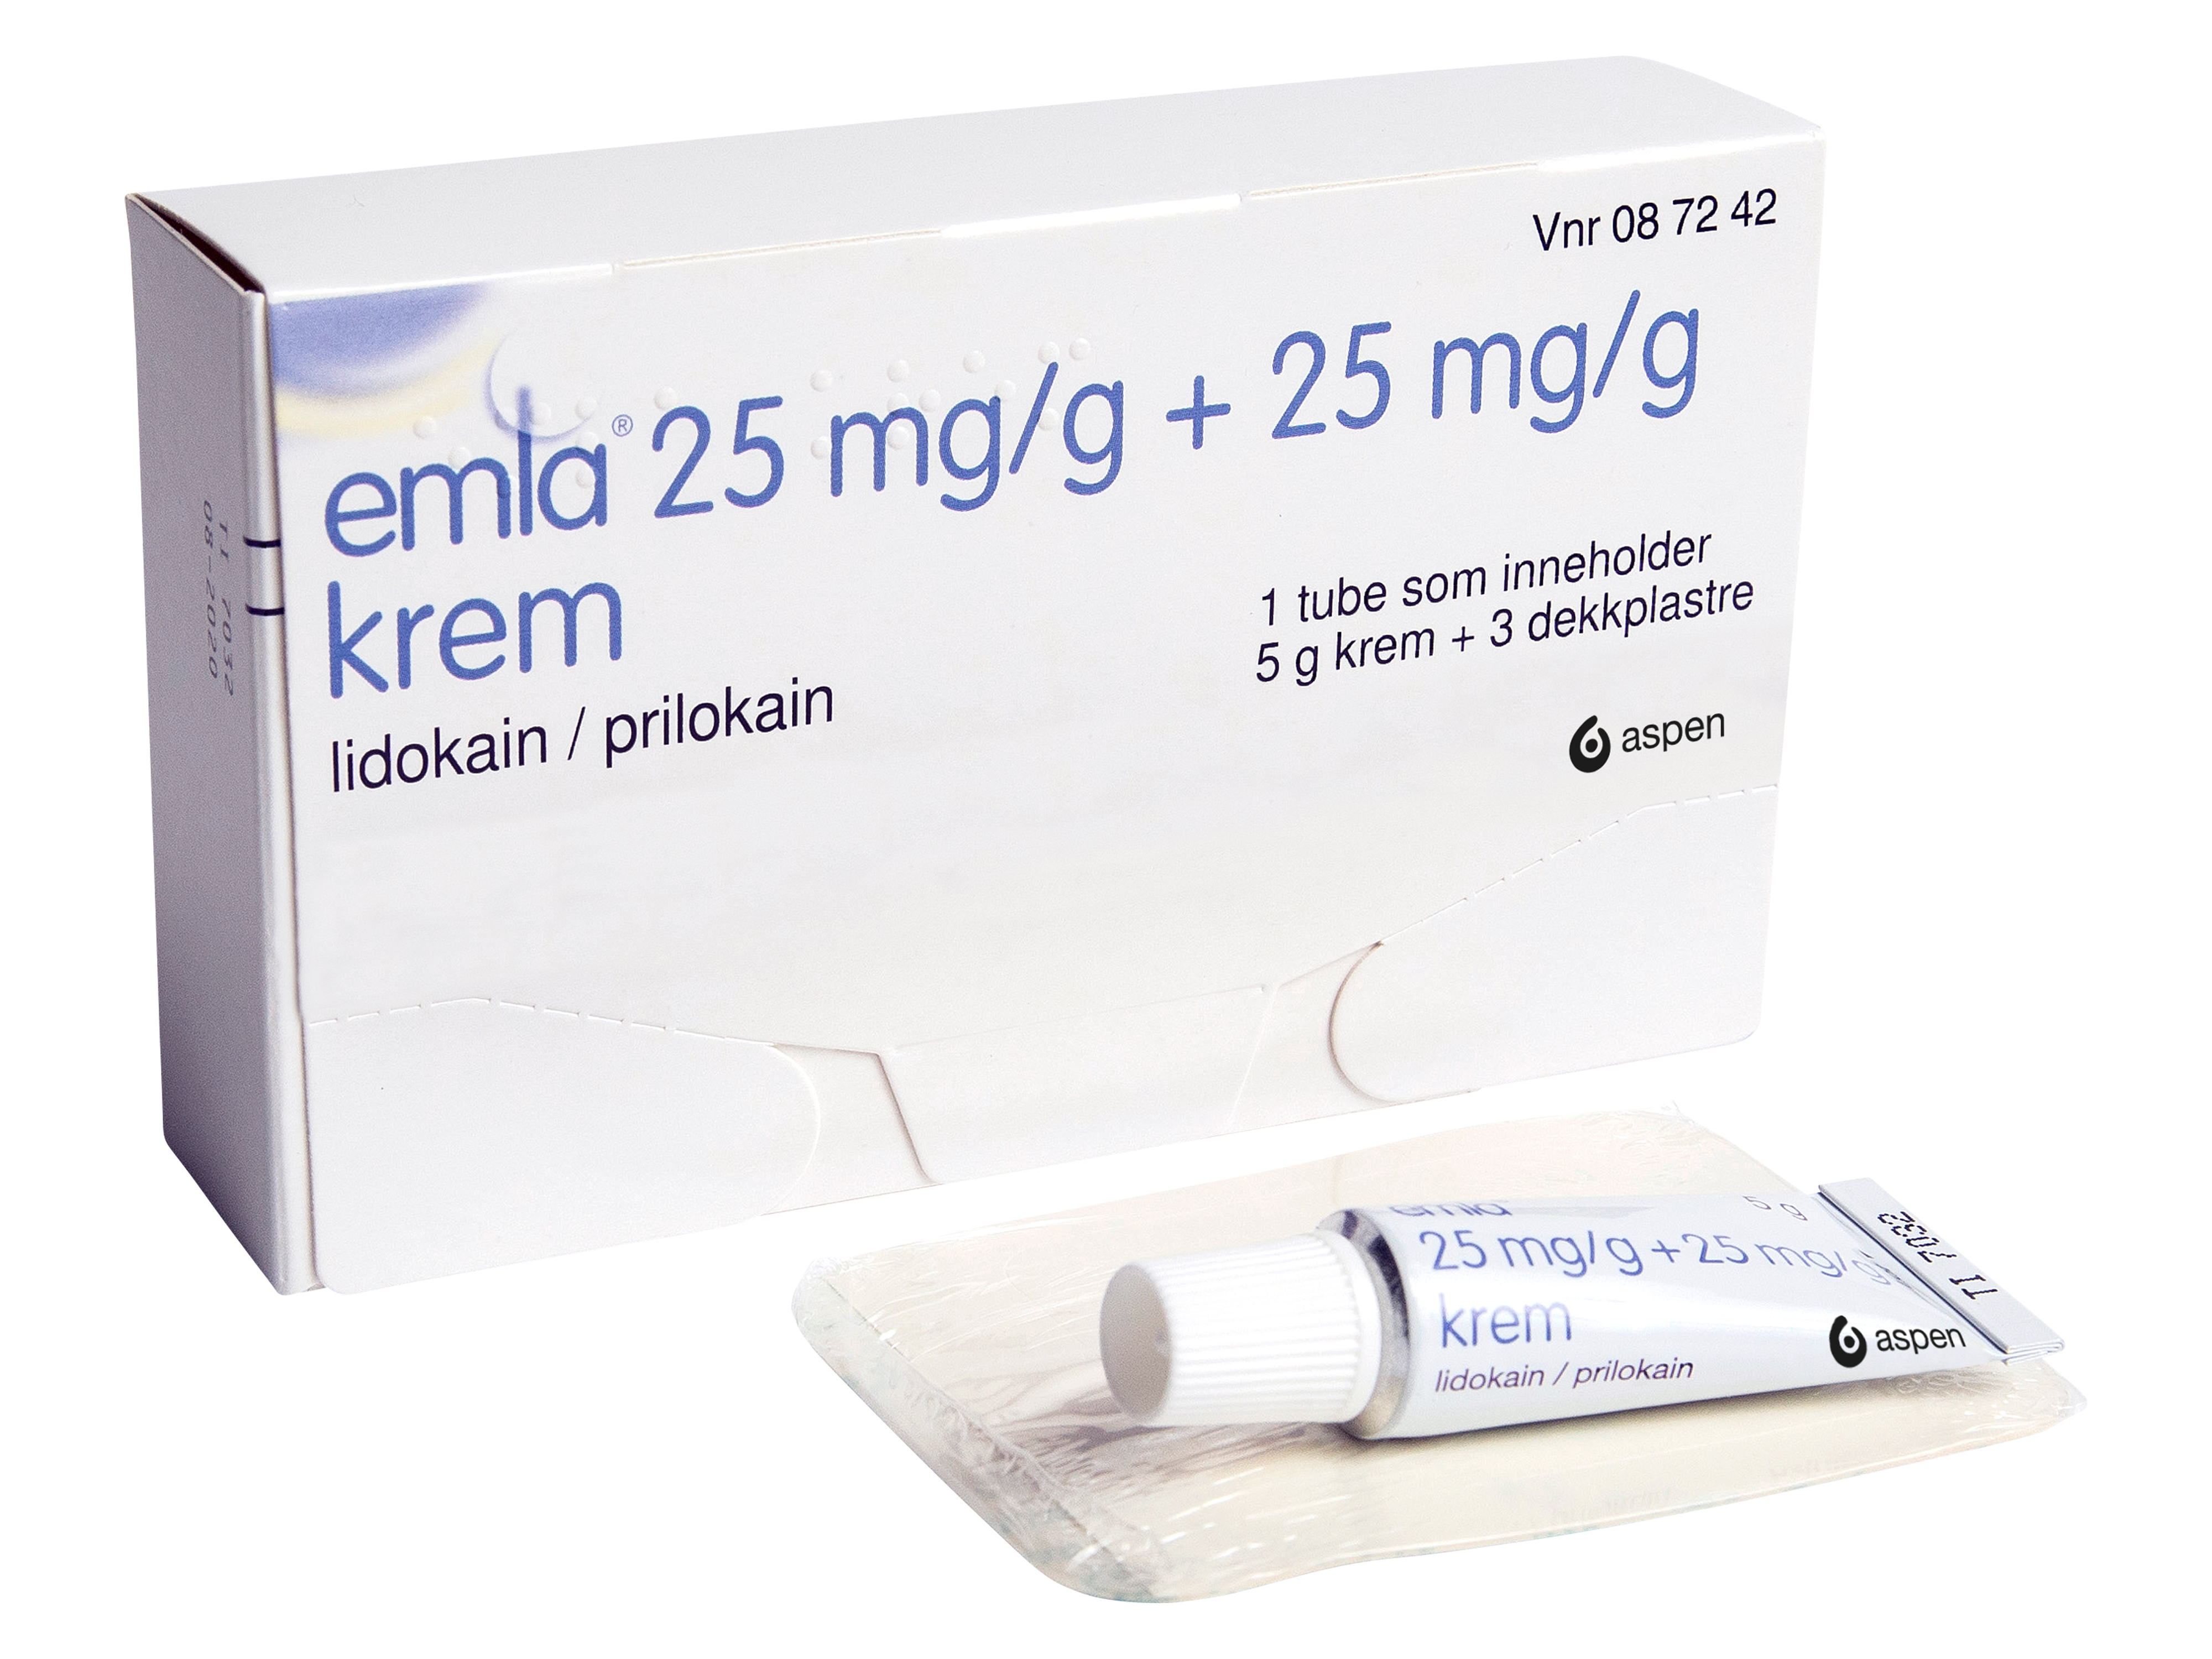 Emla Krem 25 mg/g og dekkplaster, 5 gram + 3 dekkplastre